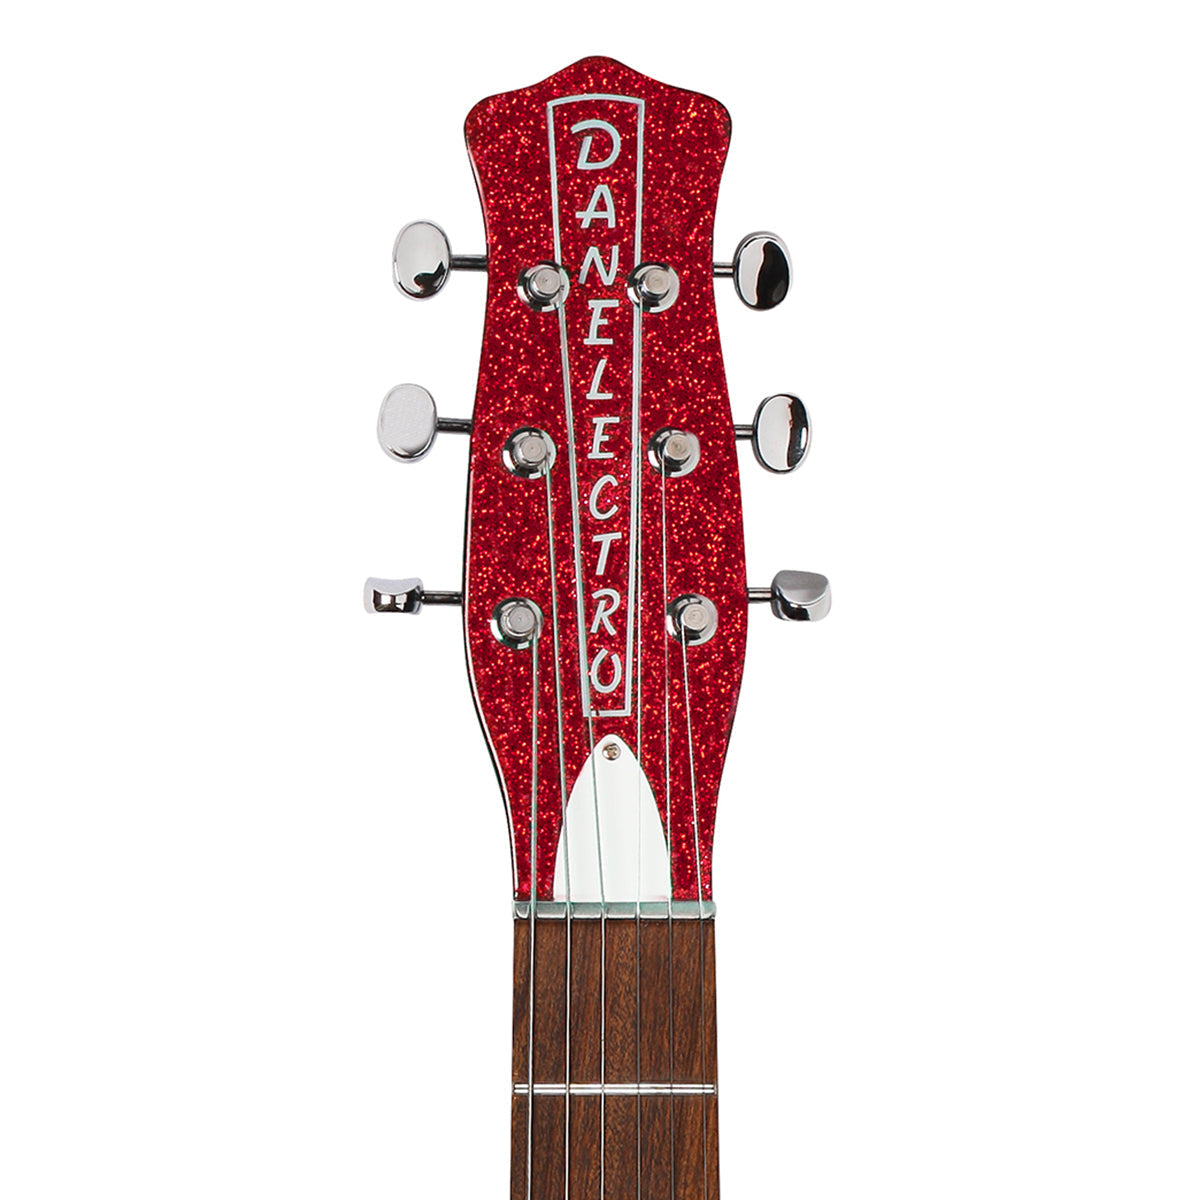 Danelectro '59M NOS Electric Guitar ~ Red Metal Flake, Electric Guitar for sale at Richards Guitars.